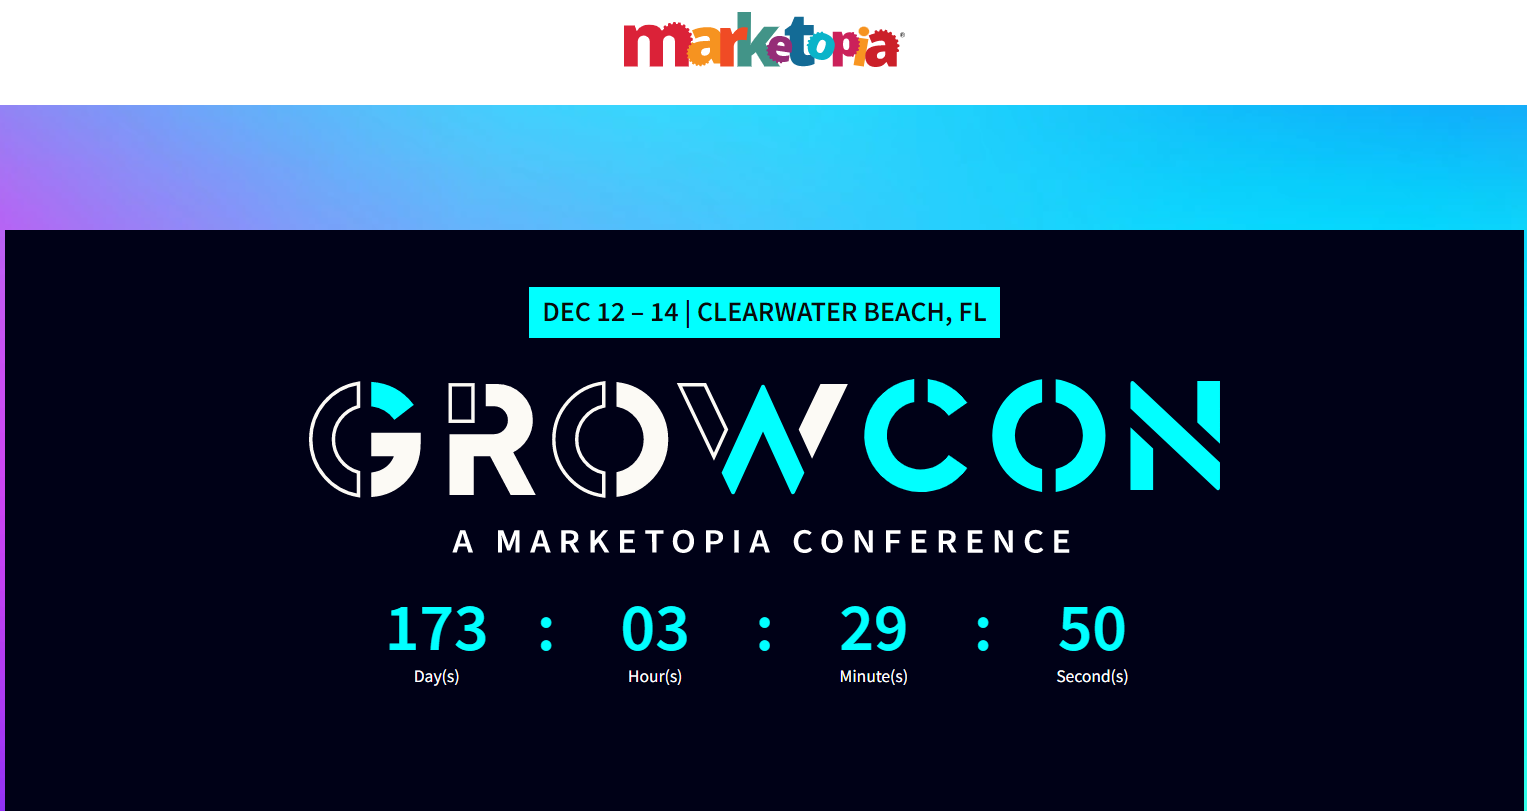 Marketopia Growcon MSP conference